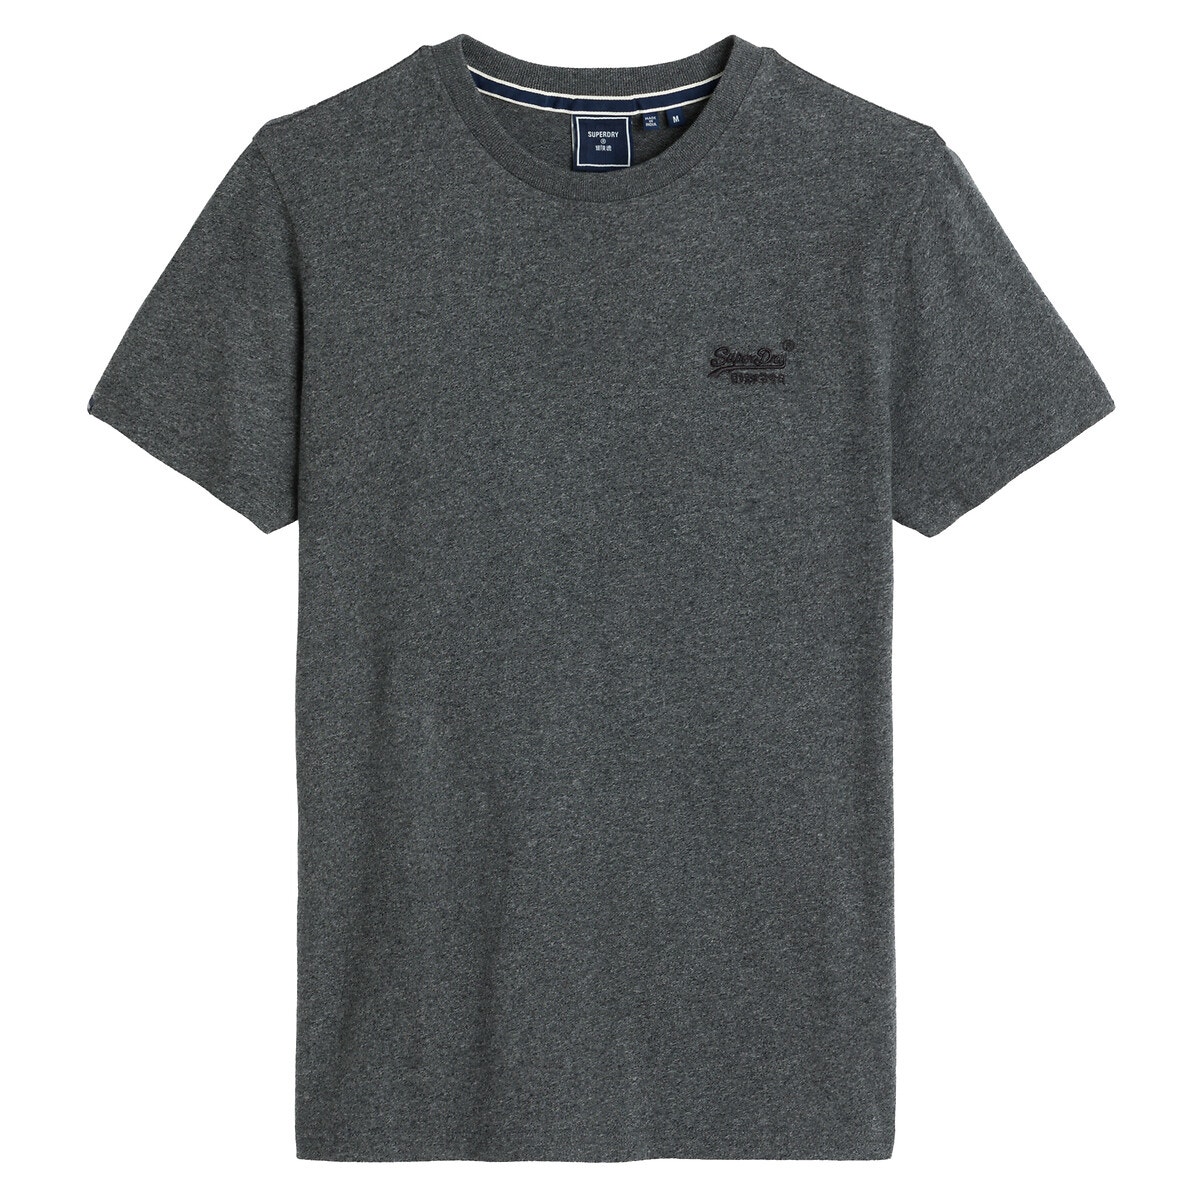 ΑΝΔΡΑΣ | Μπλούζες & Πουκάμισα | T-shirts Κοντομάνικο T-shirt, Vintage Logo